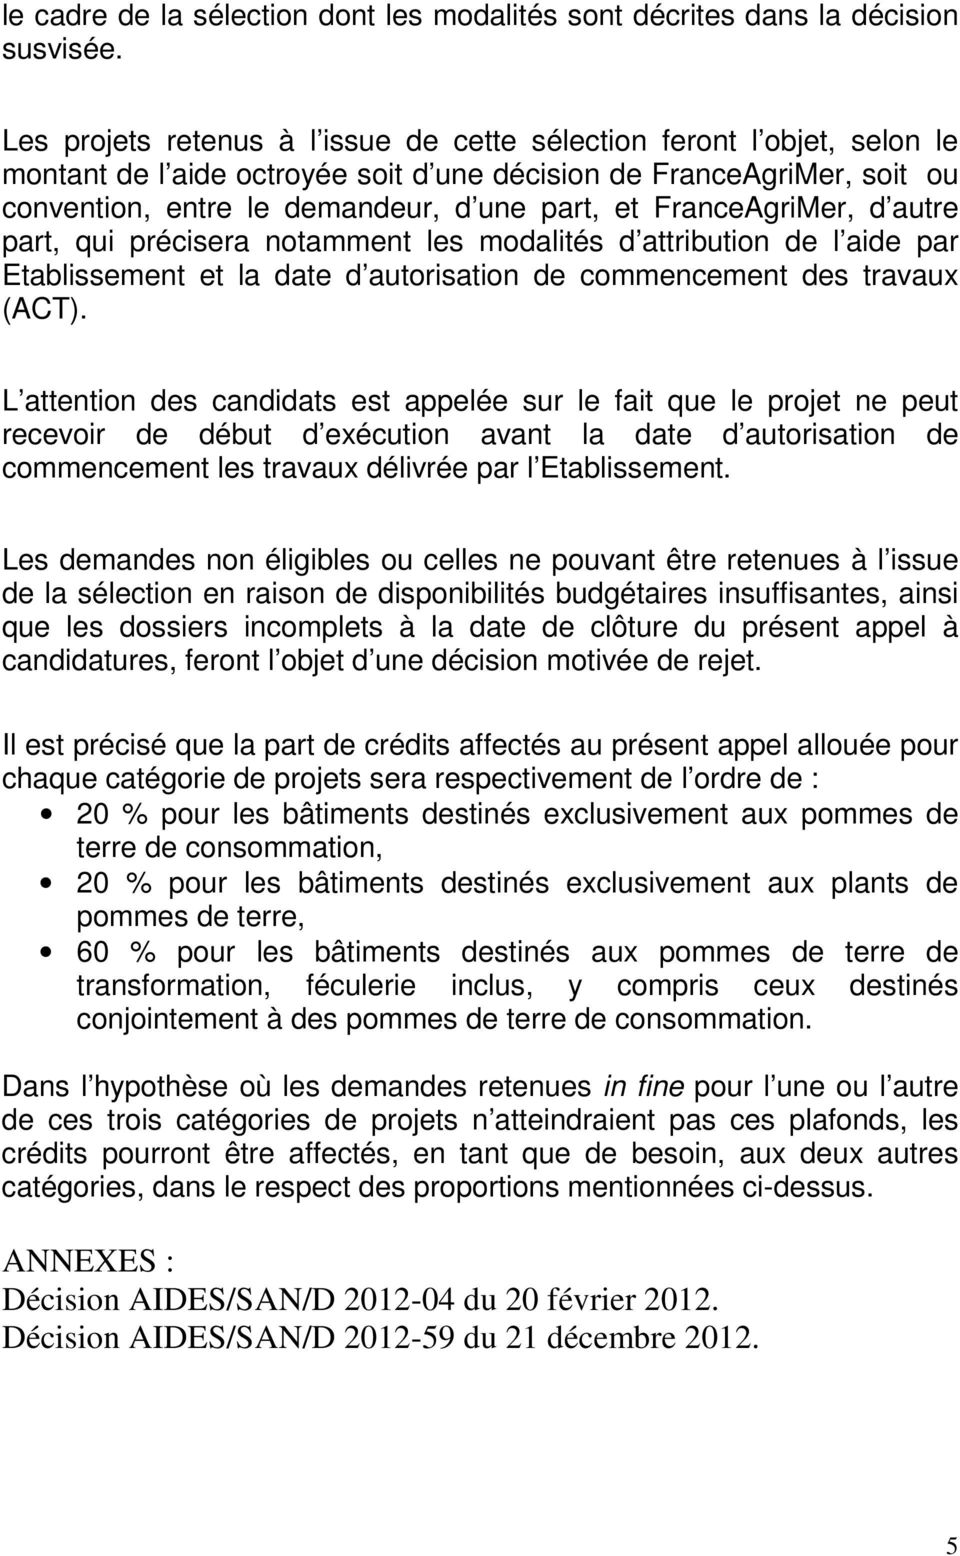 FranceAgriMer, d autre part, qui précisera notamment les modalités d attribution de l aide par Etablissement et la date d autorisation de commencement des travaux (ACT).